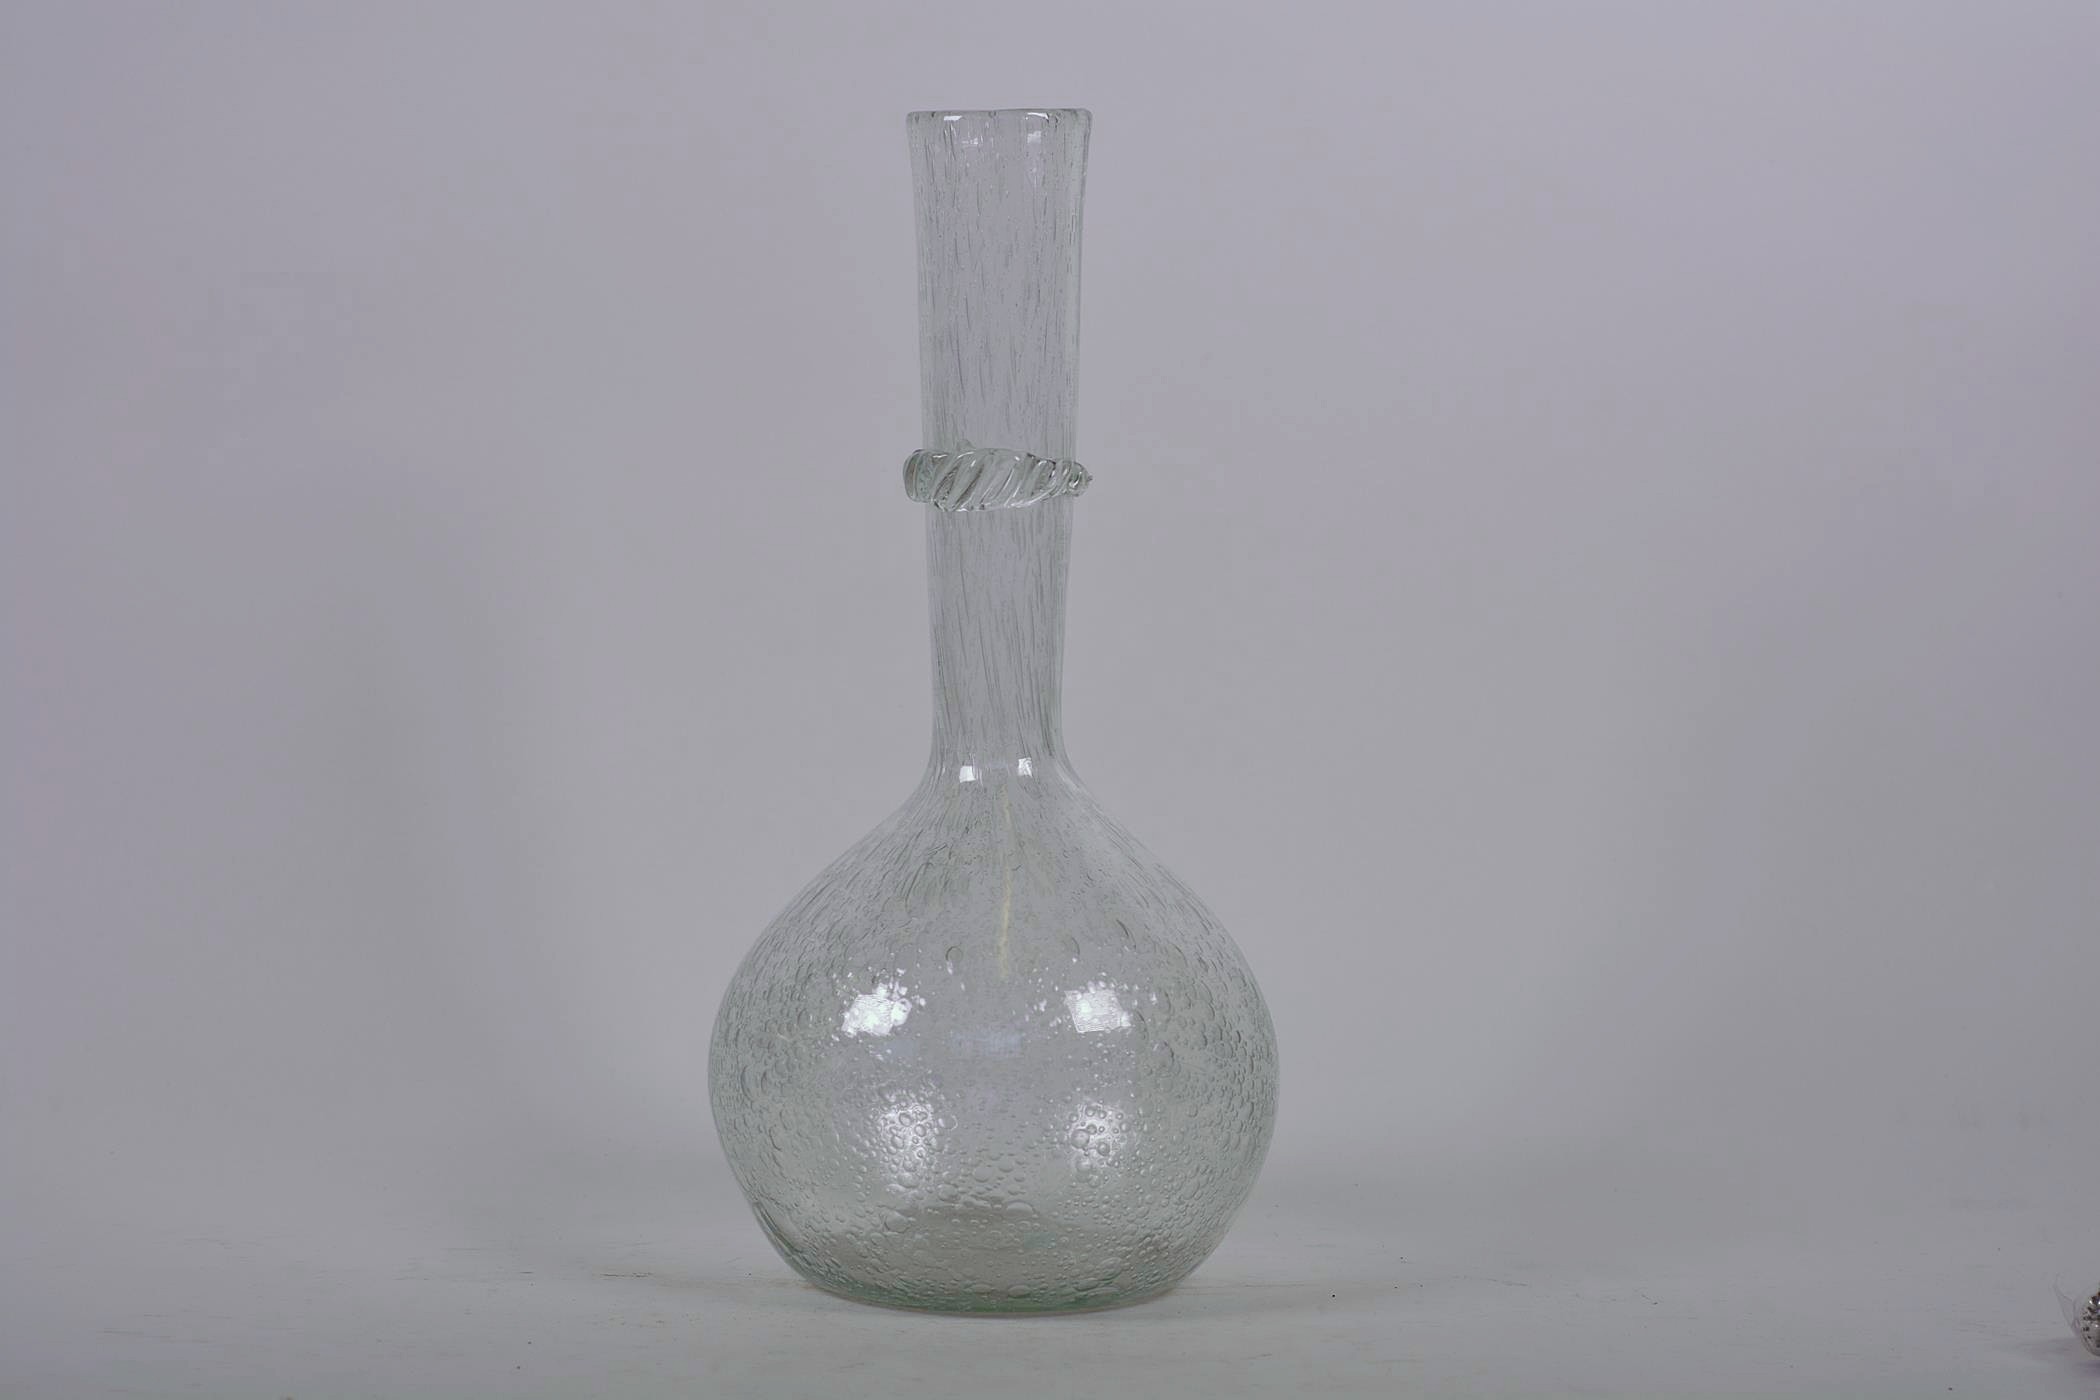 A bulbous bubble glass specimen vase with long slender neck, 12" high